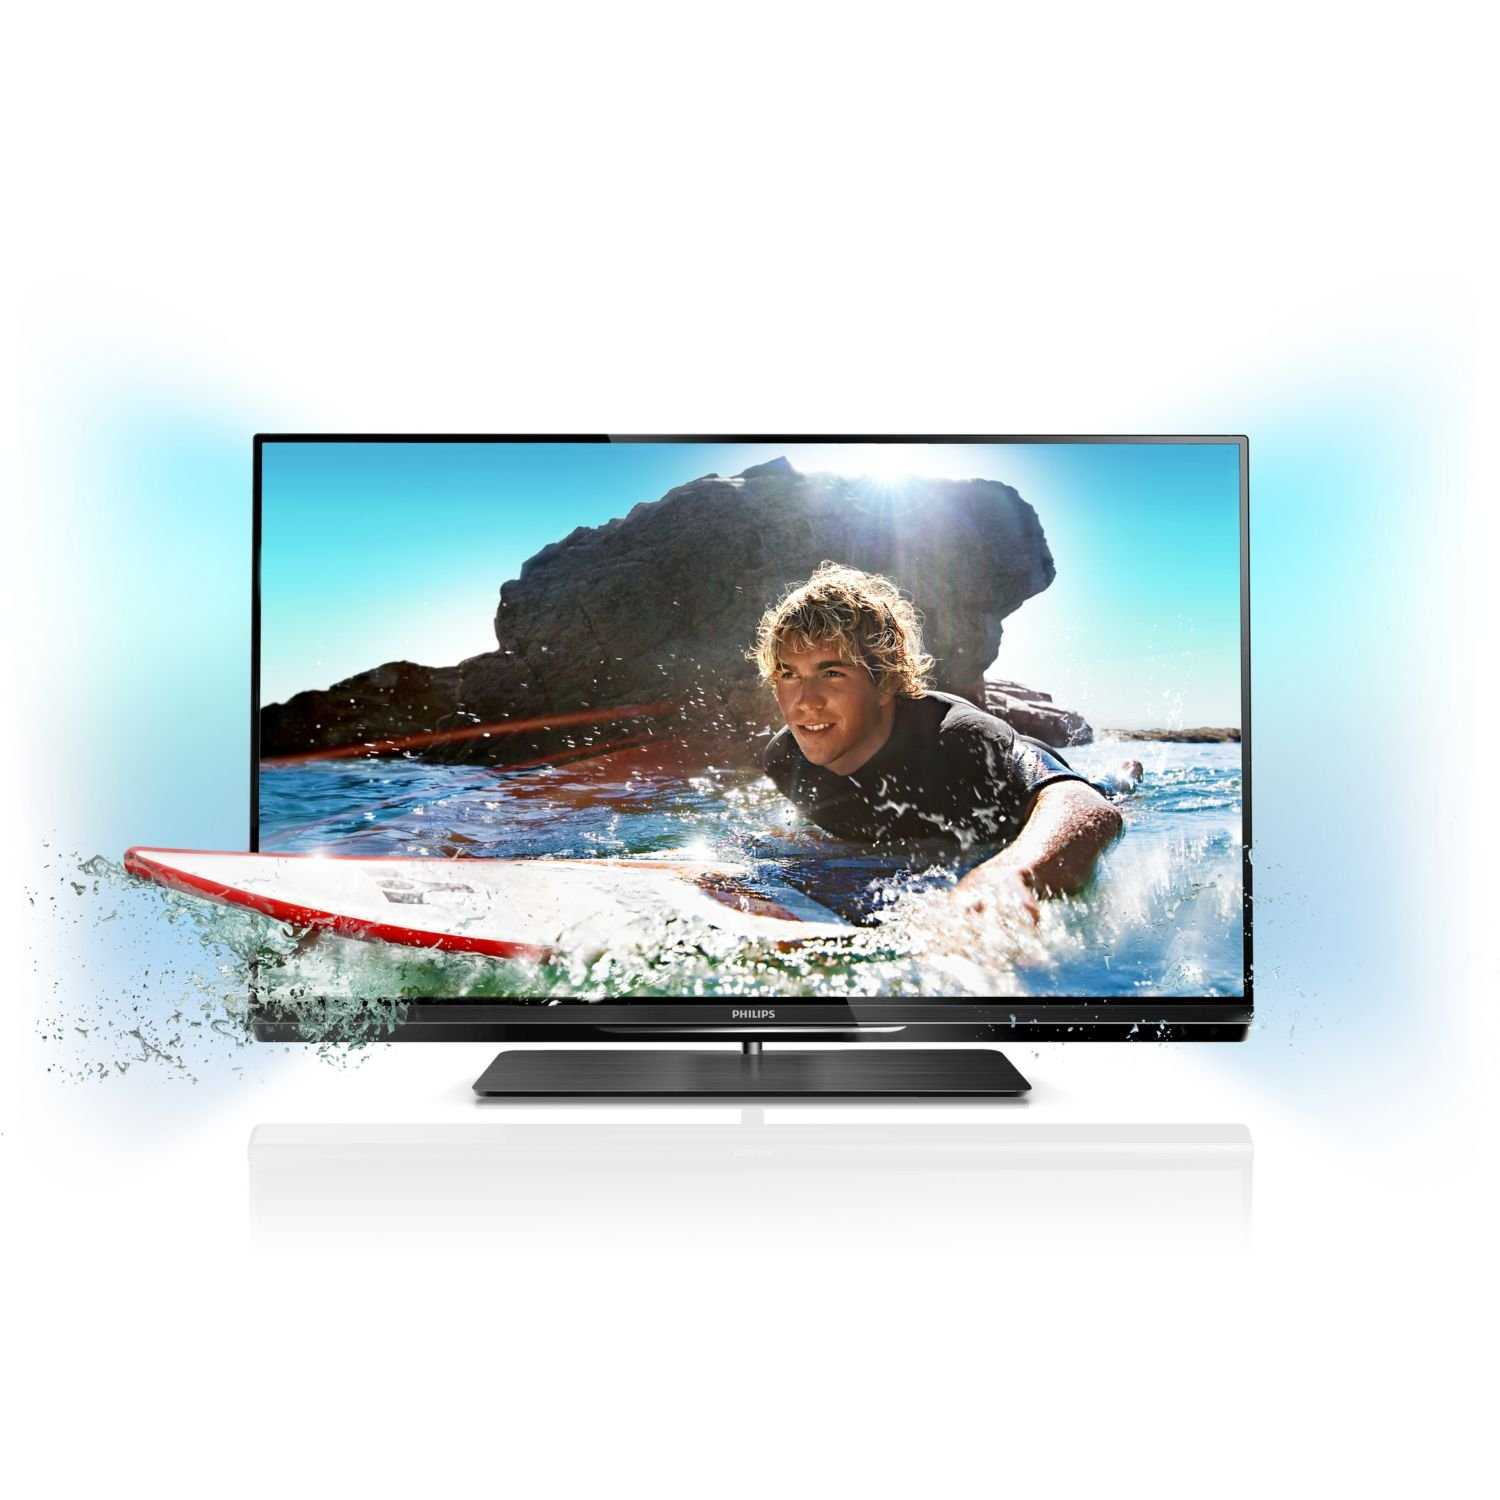 Philips 50pfl5008t (черный) - купить , скидки, цена, отзывы, обзор, характеристики - телевизоры